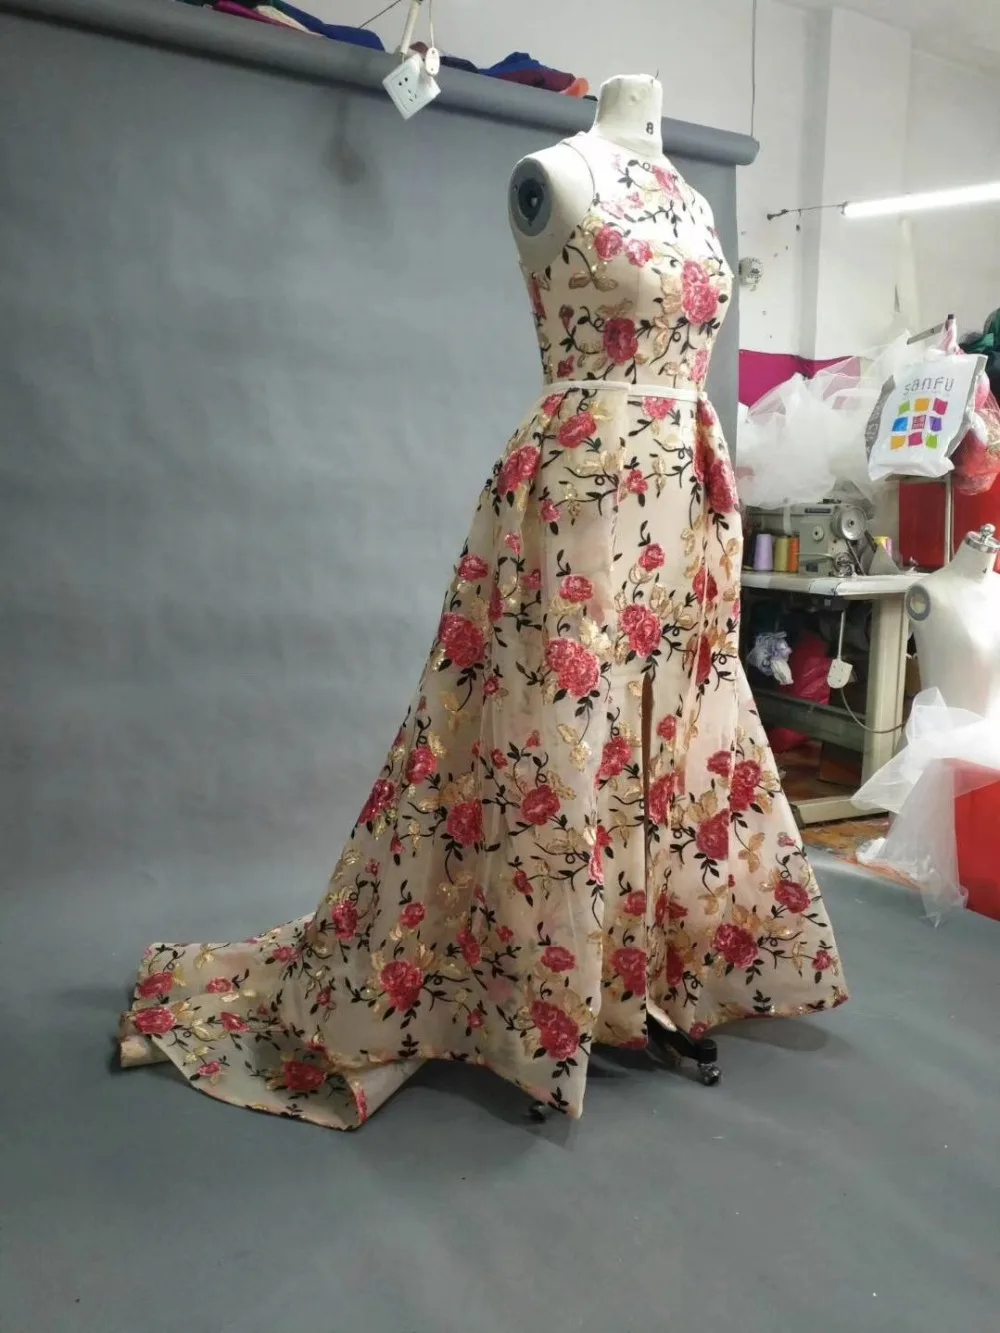 CloverBridal Высокое качество Бесплатная портной made 2018 Мода Платья для специальных торжеств Цветочный принт со съемными юбка-трапеция